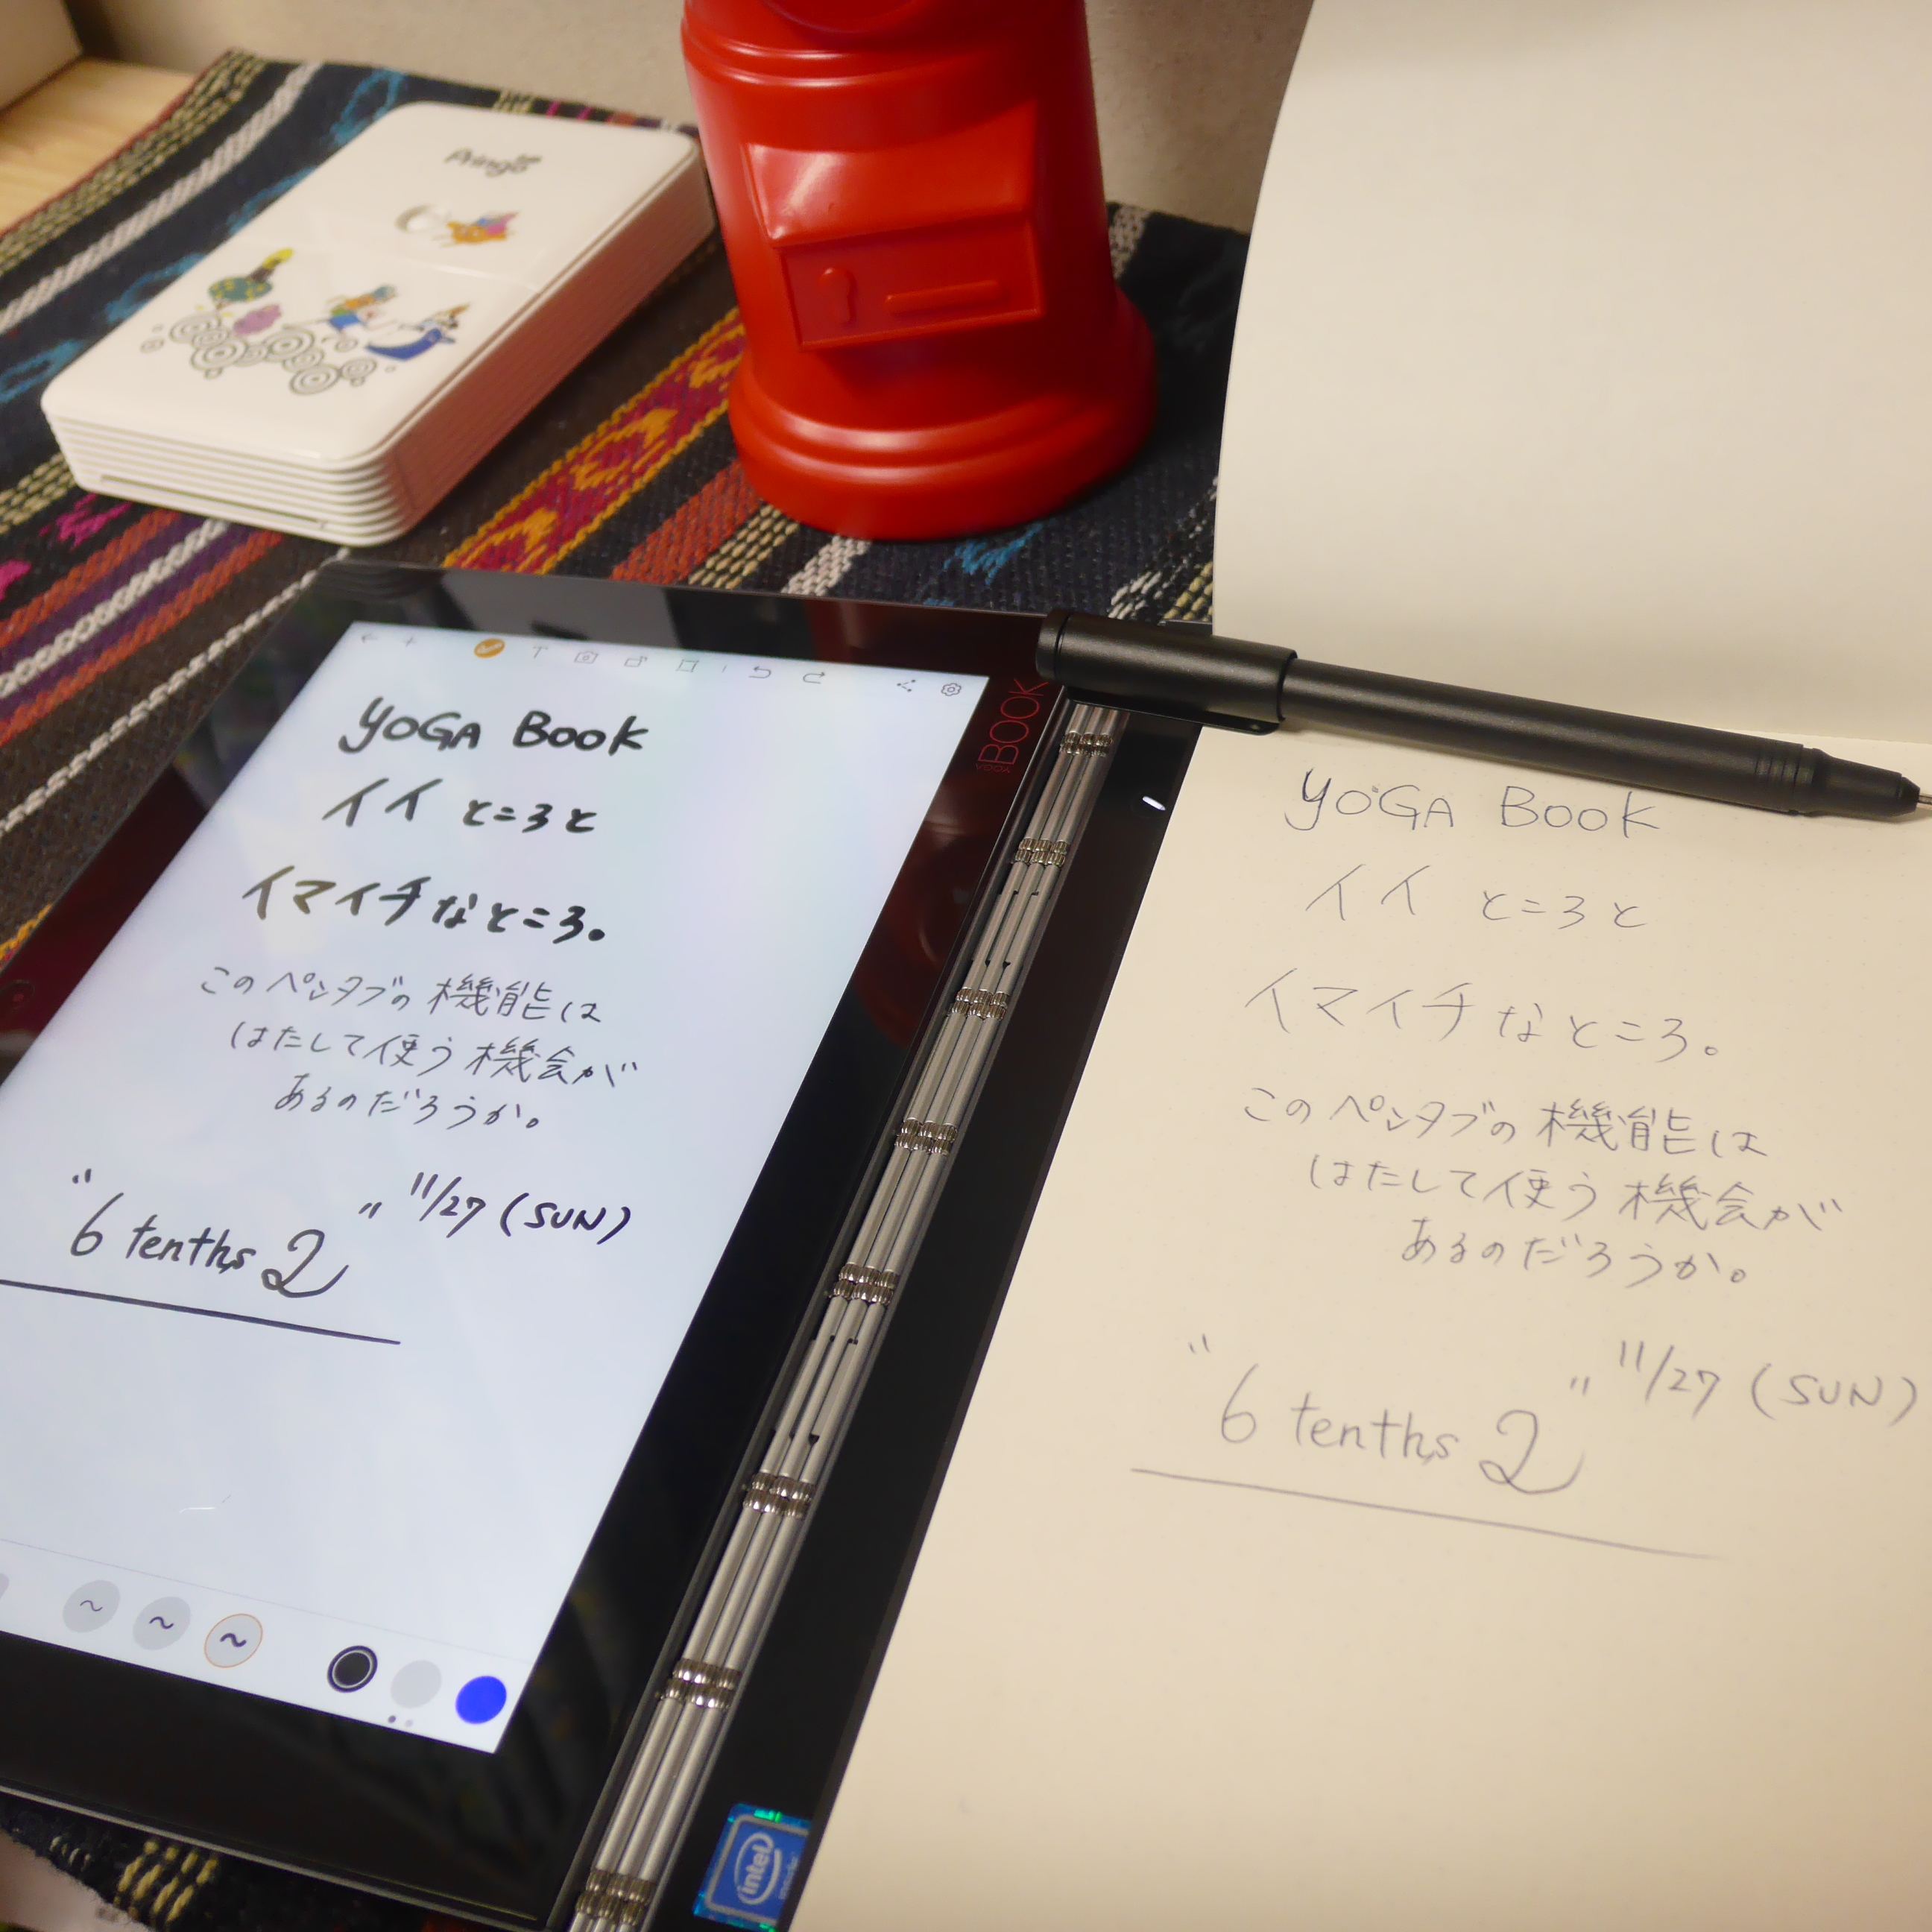 レビュー記事 Lenovo Yoga Book With Android を１ヶ月使用レビュー 6tenths2 Blog